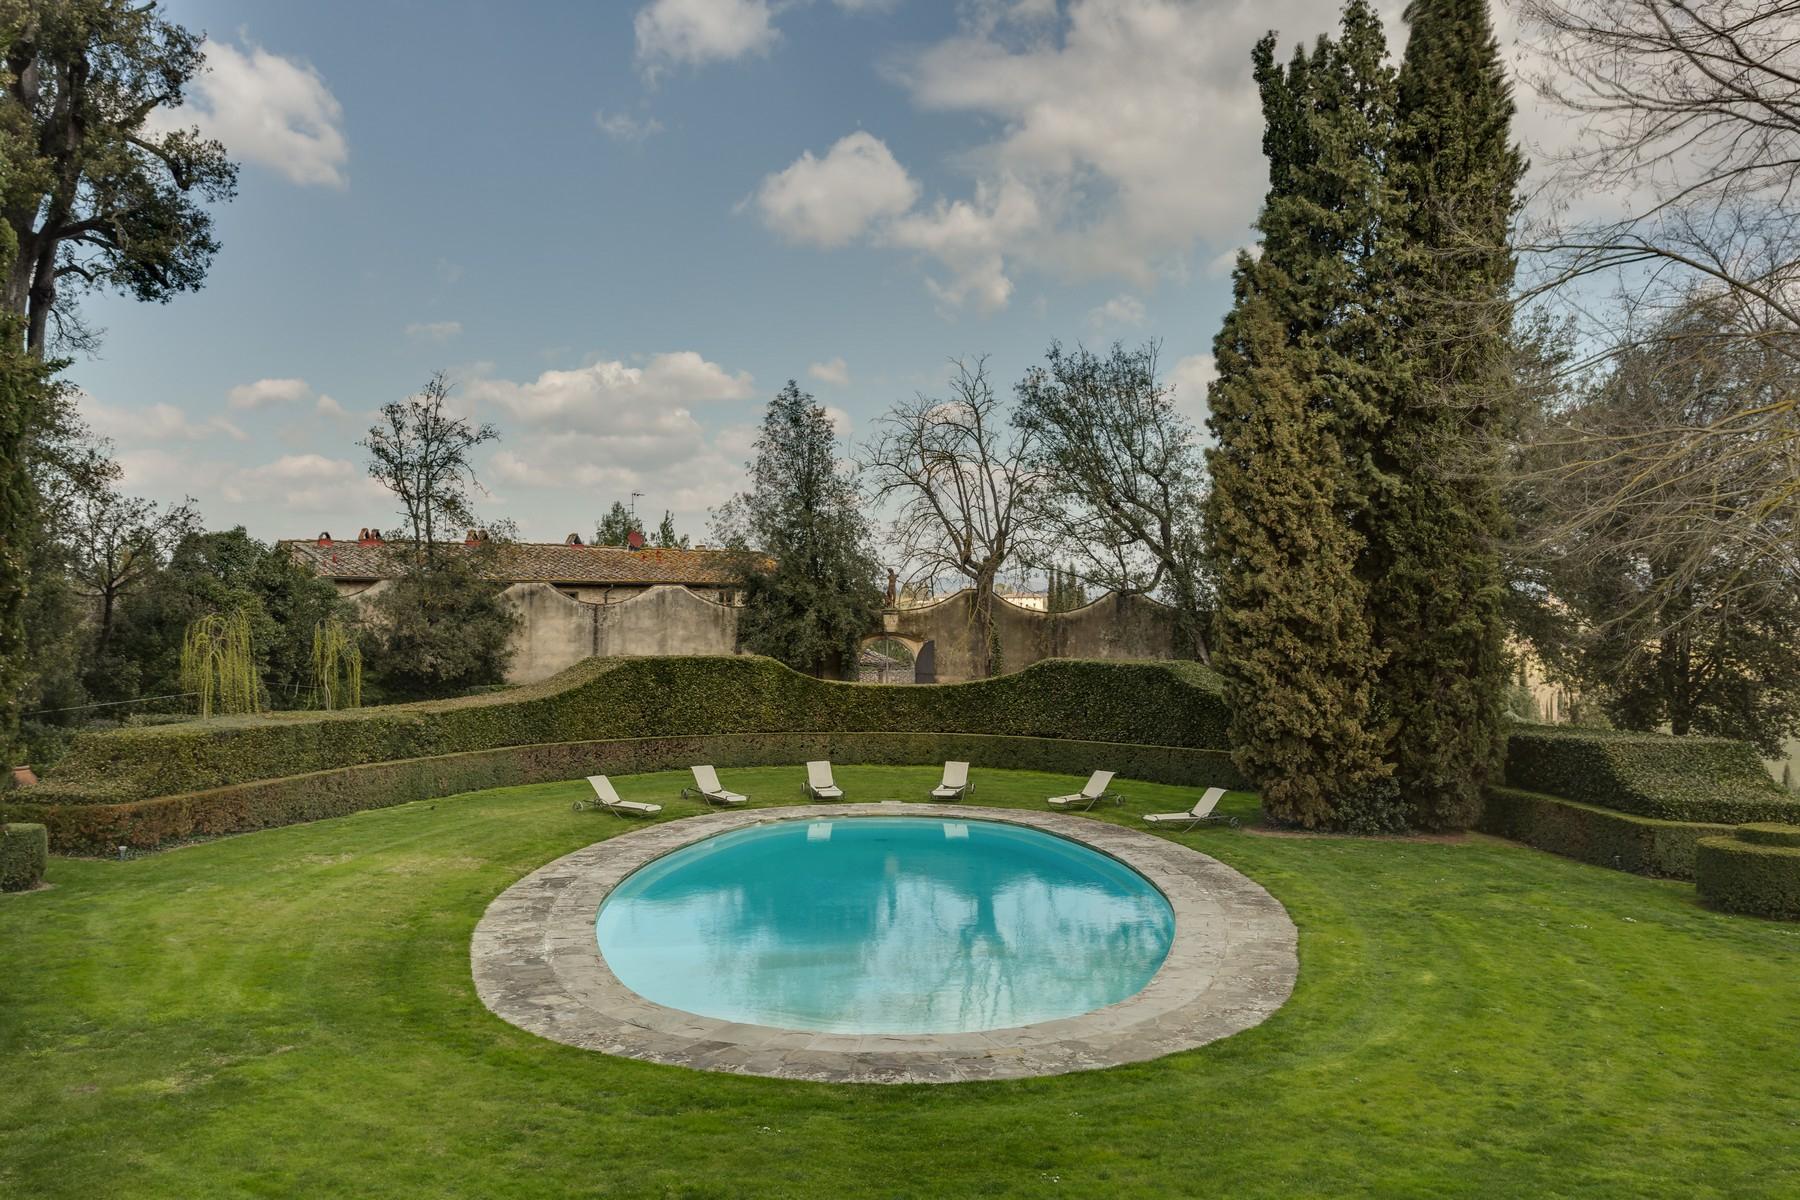 Meravigliosa Villa Rinascimentale con piscina sulle colline di Firenze - 41